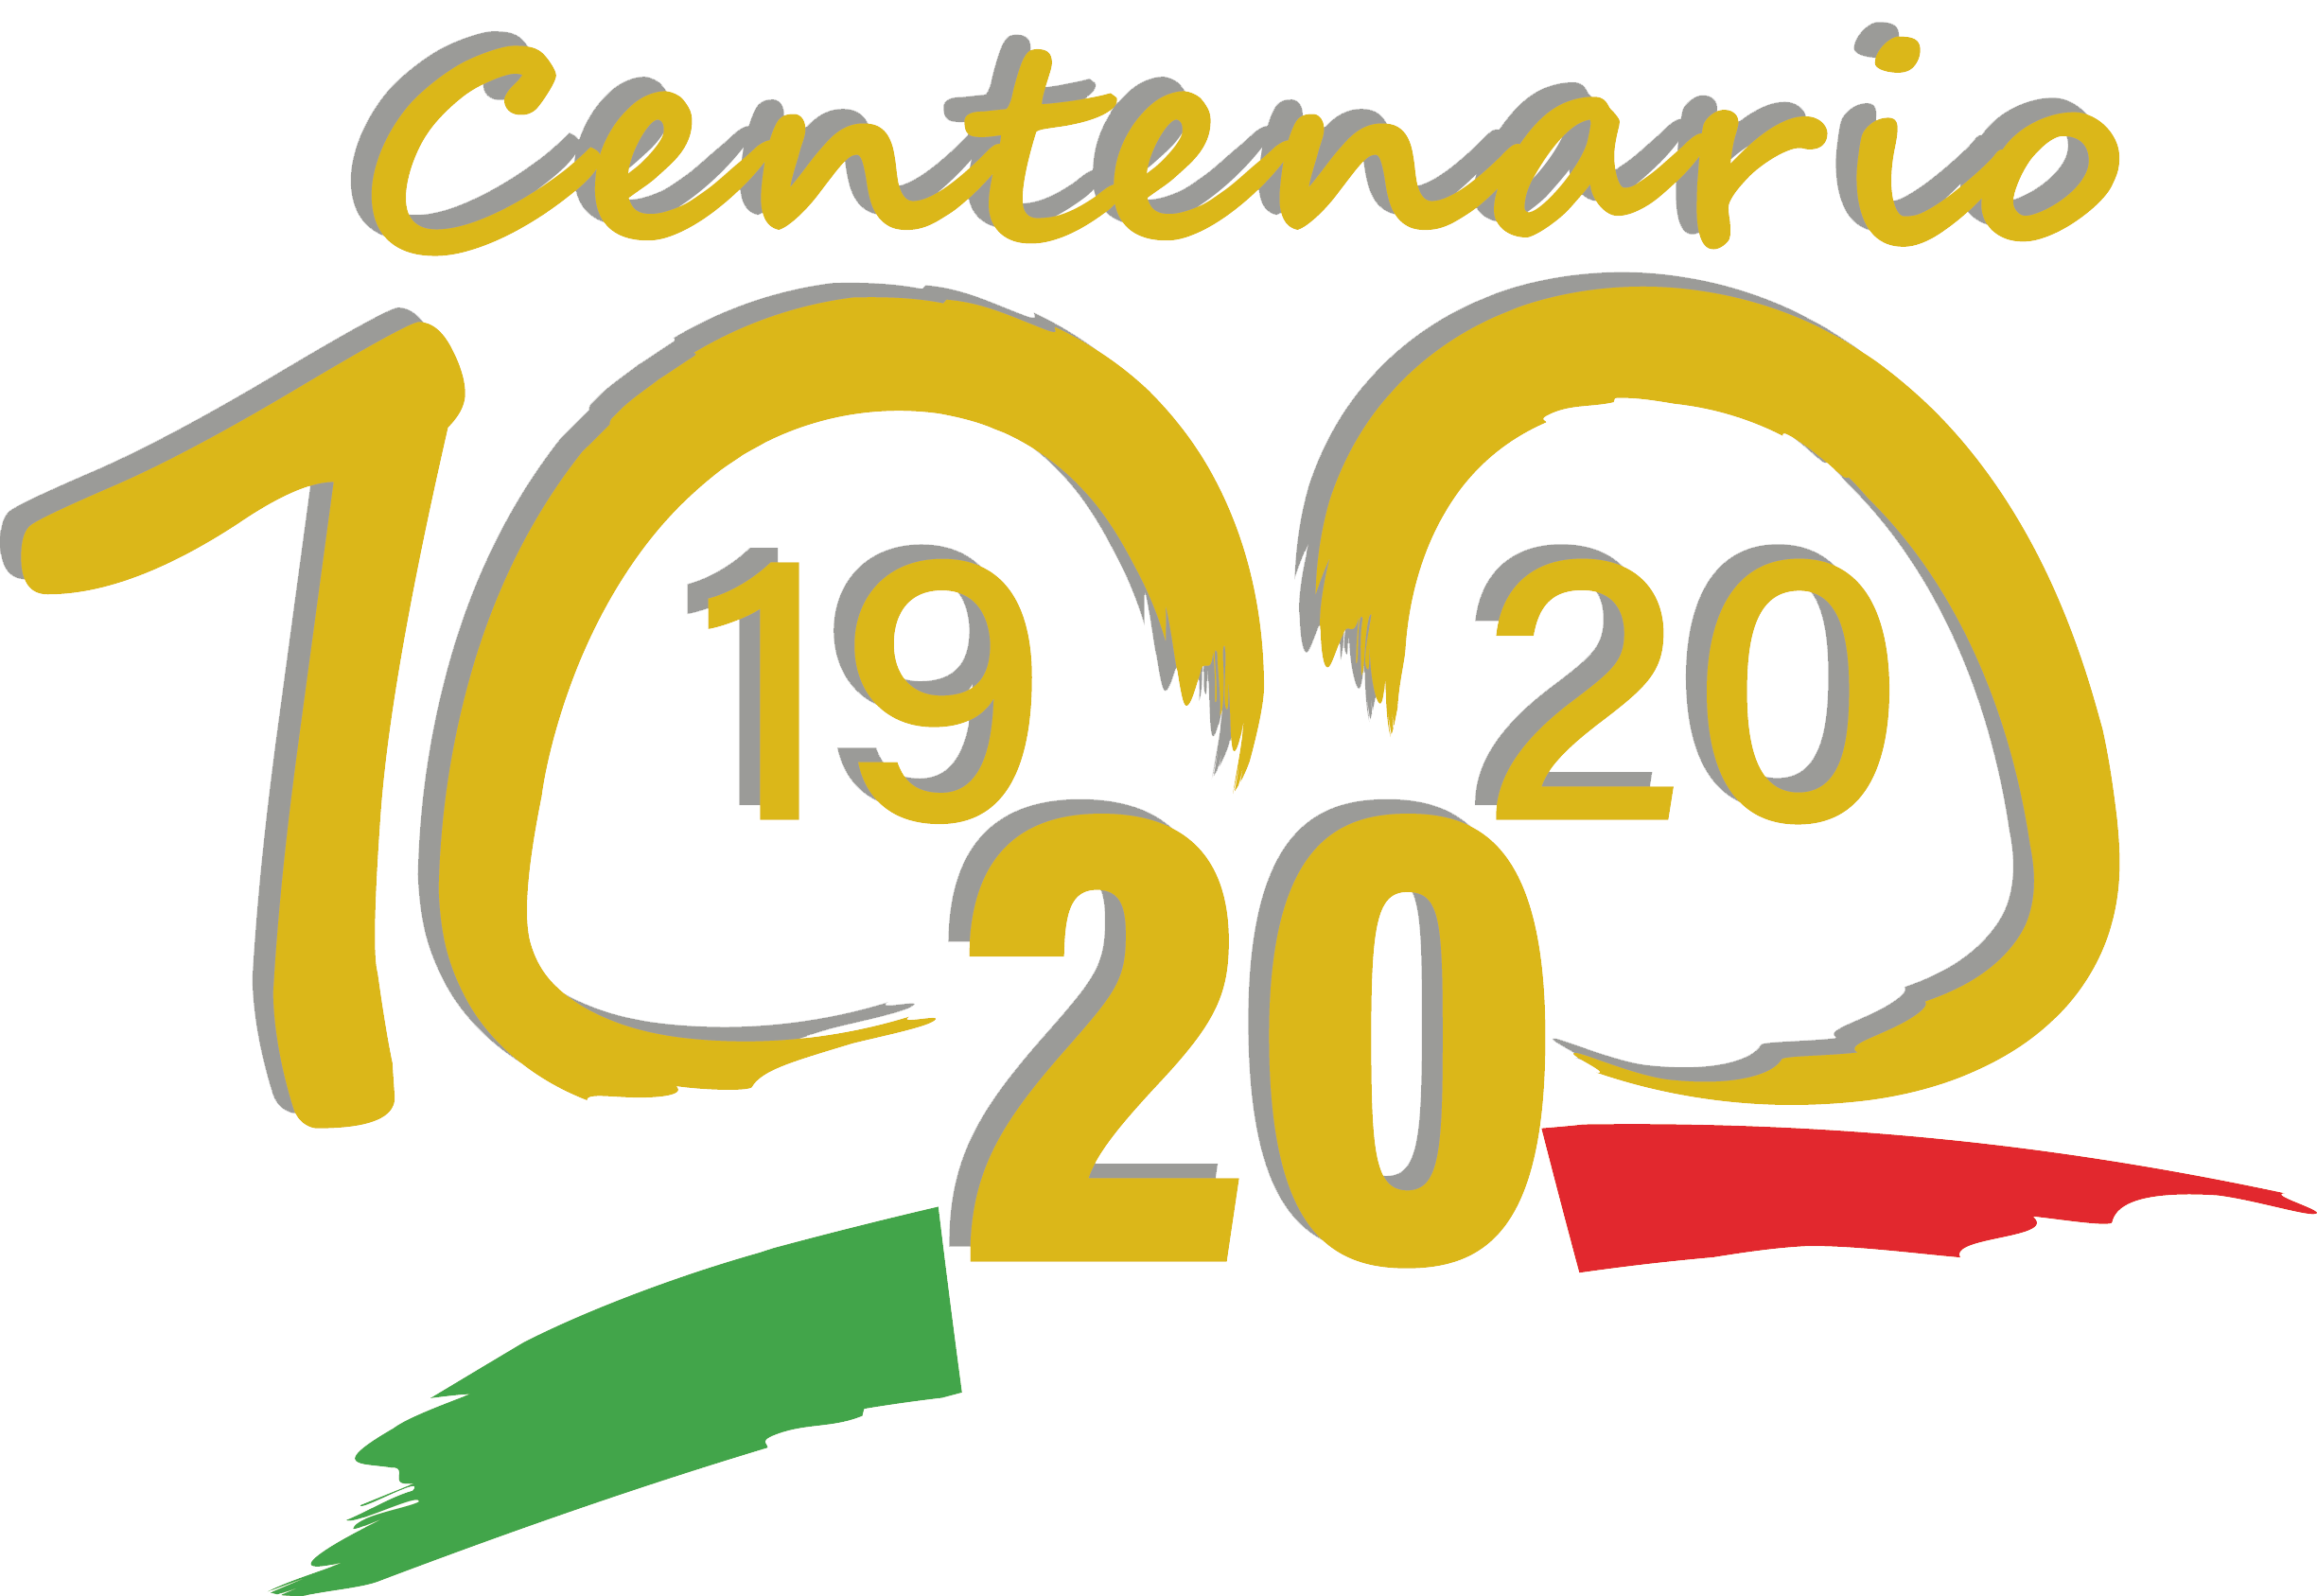 Logo del centenario dell'UICI. In alto la scritta centenario in dorato.Al centro il numero 100 in dorato.In basso, il tricolore italiano con sopra l’indicazione dell’anno di fondazione (1920) e dell’anno attuale (2020)